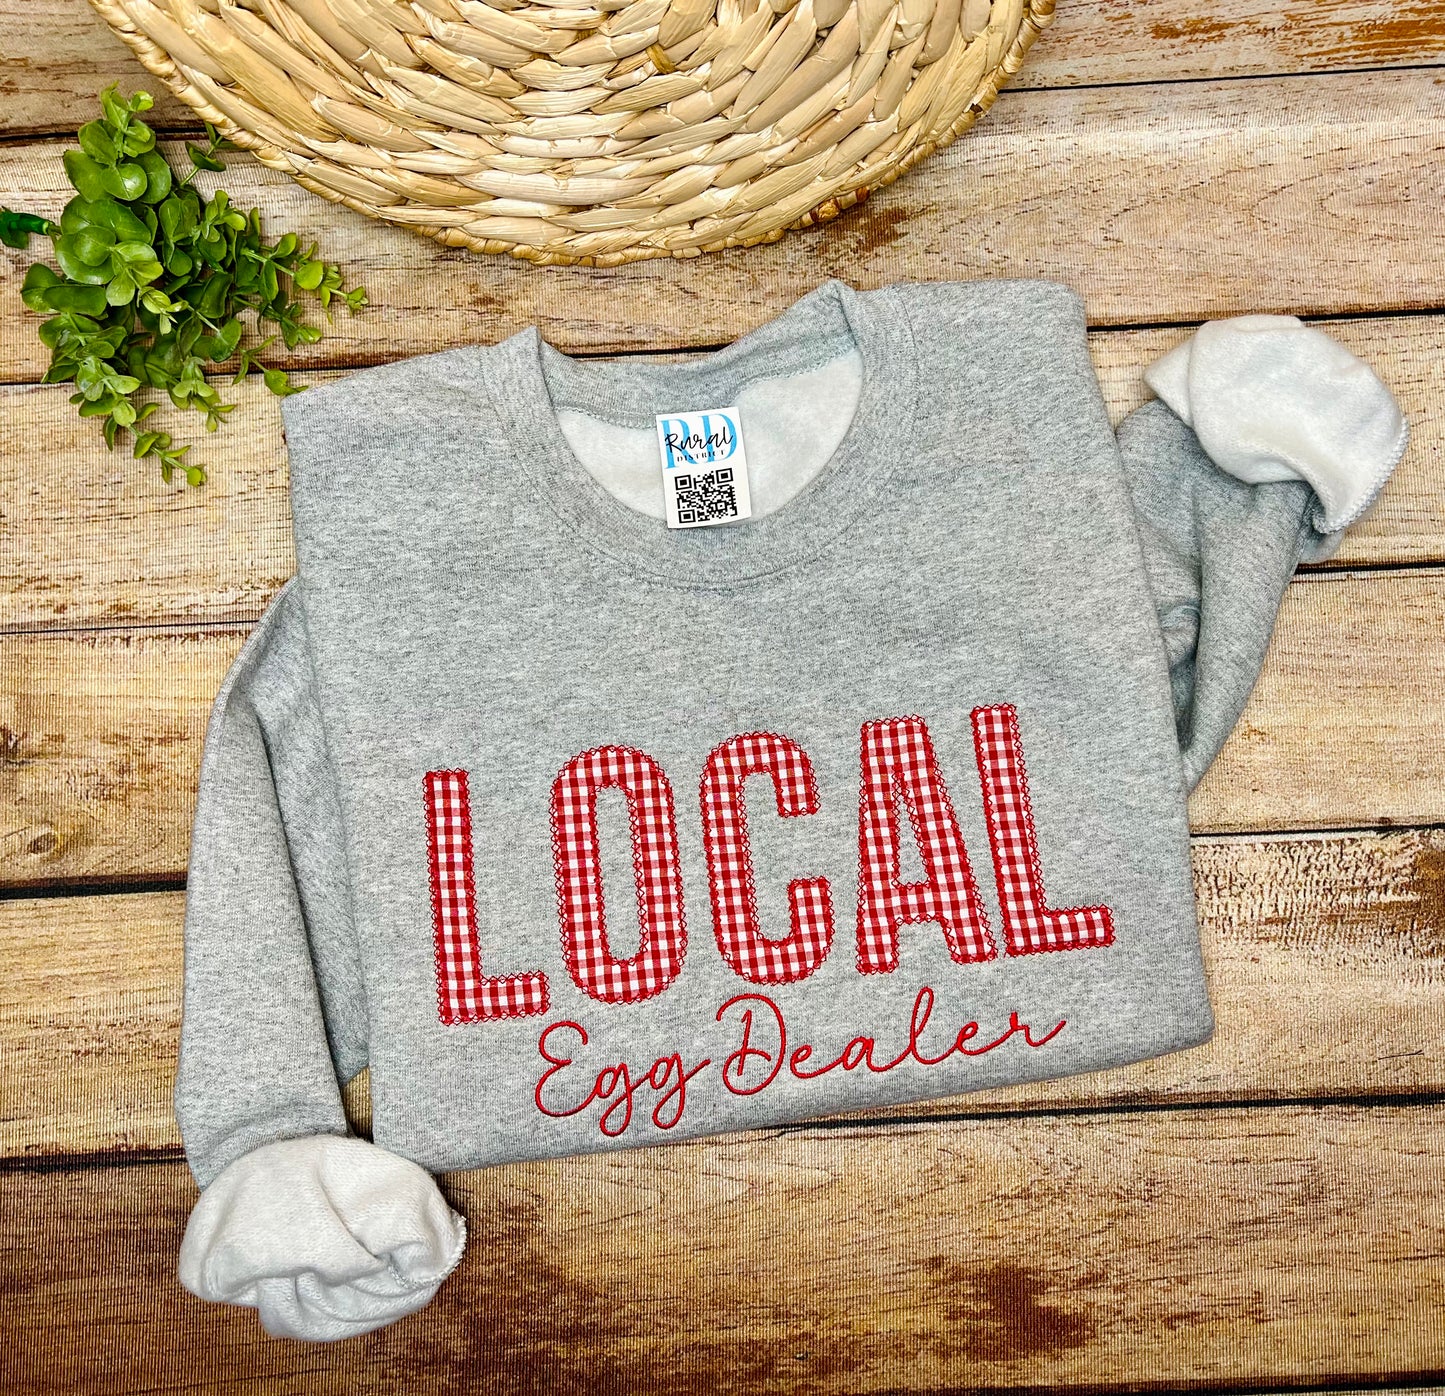 Local egg dealer sweatshirt appliqué